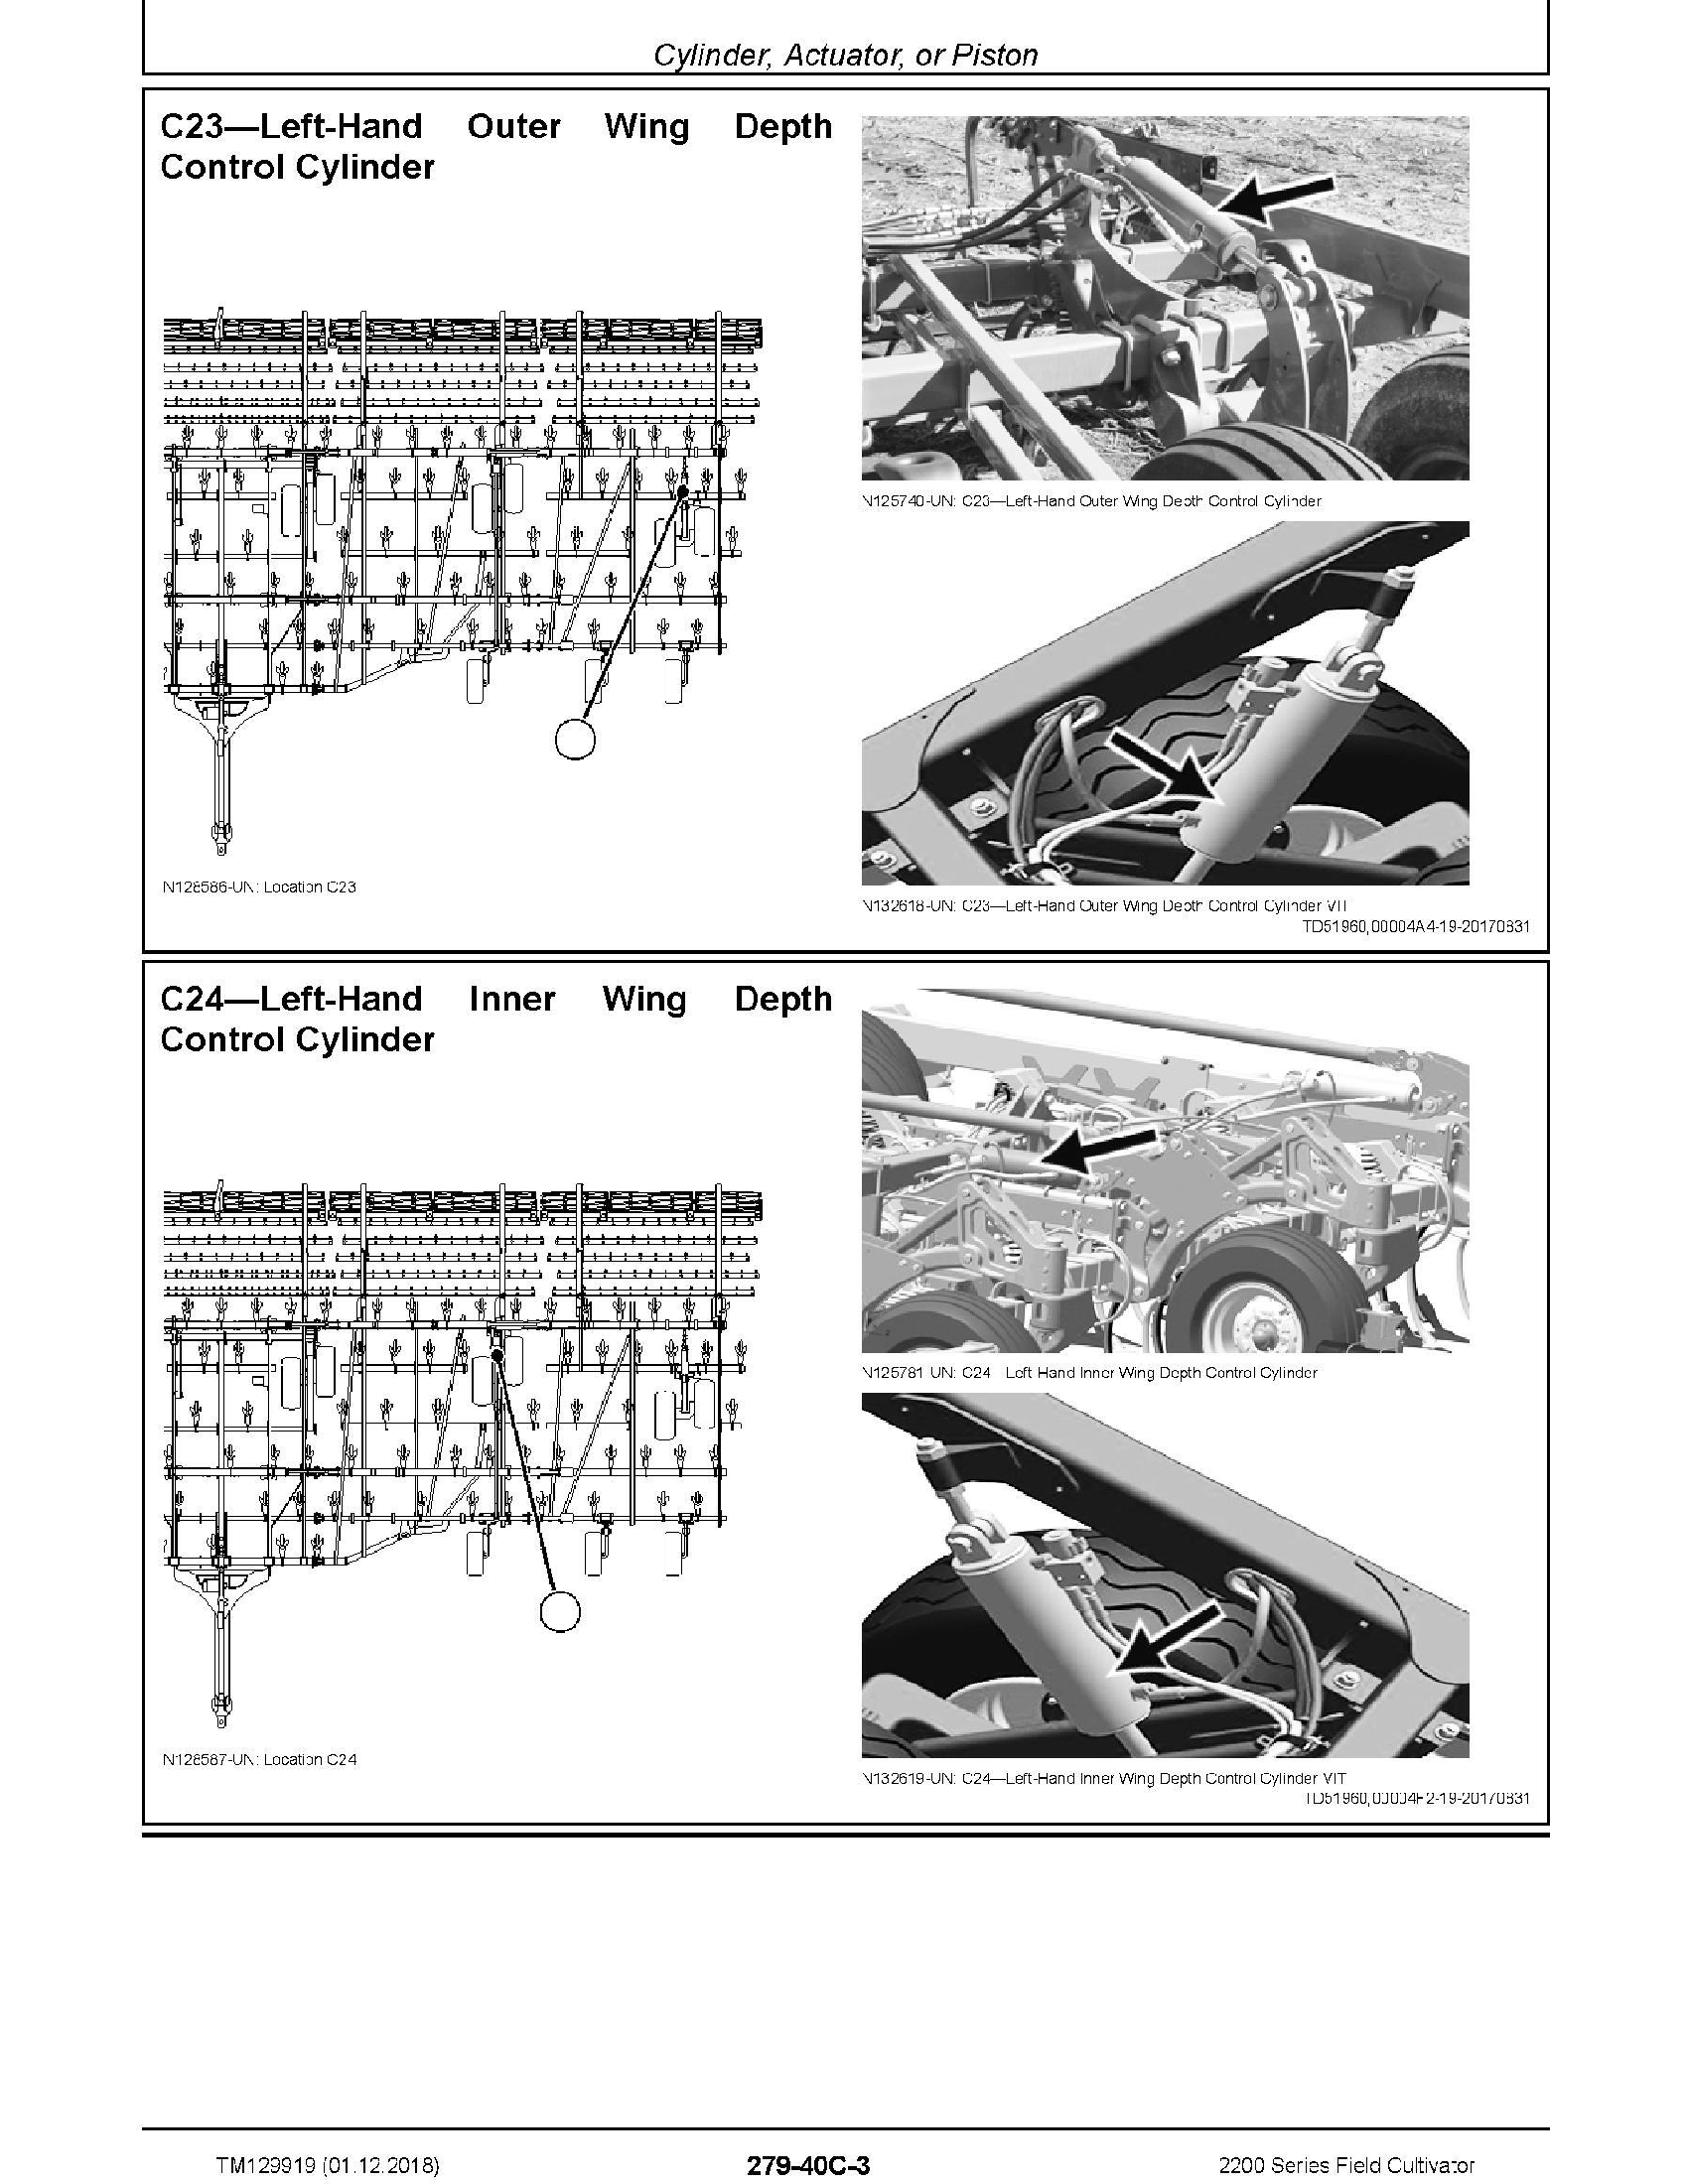 John Deere 2200 manual pdf